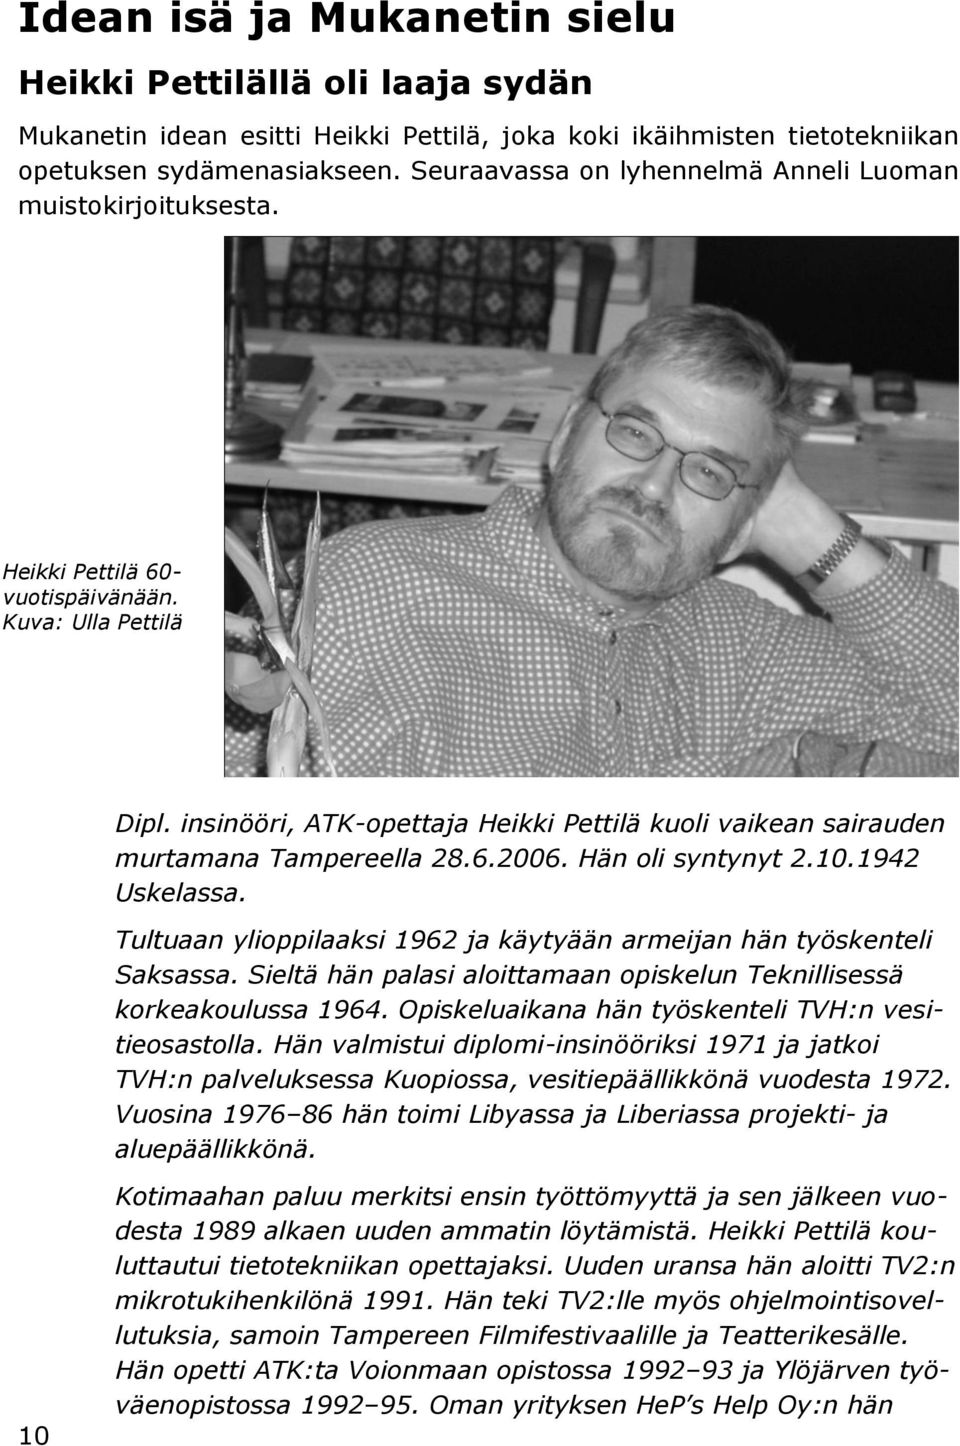 insinööri, ATK-opettaja Heikki Pettilä kuoli vaikean sairauden murtamana Tampereella 28.6.2006. Hän oli syntynyt 2.10.1942 Uskelassa.